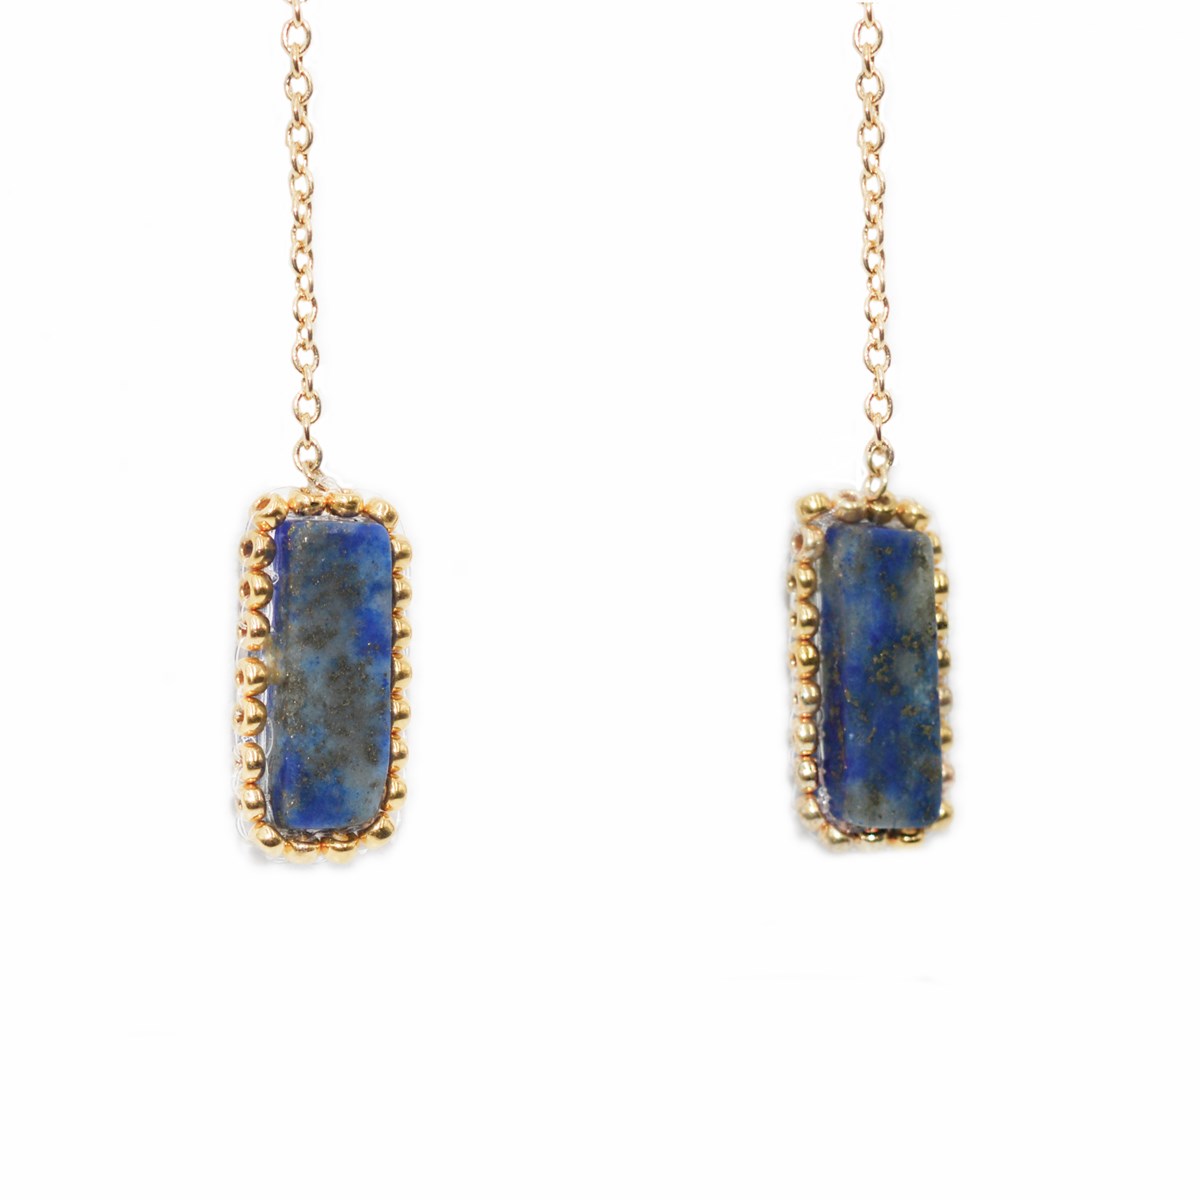 Boucles d'oreilles pendante perles tissées mains Lapis-lazuli -Doré à l'or fin - vue 2